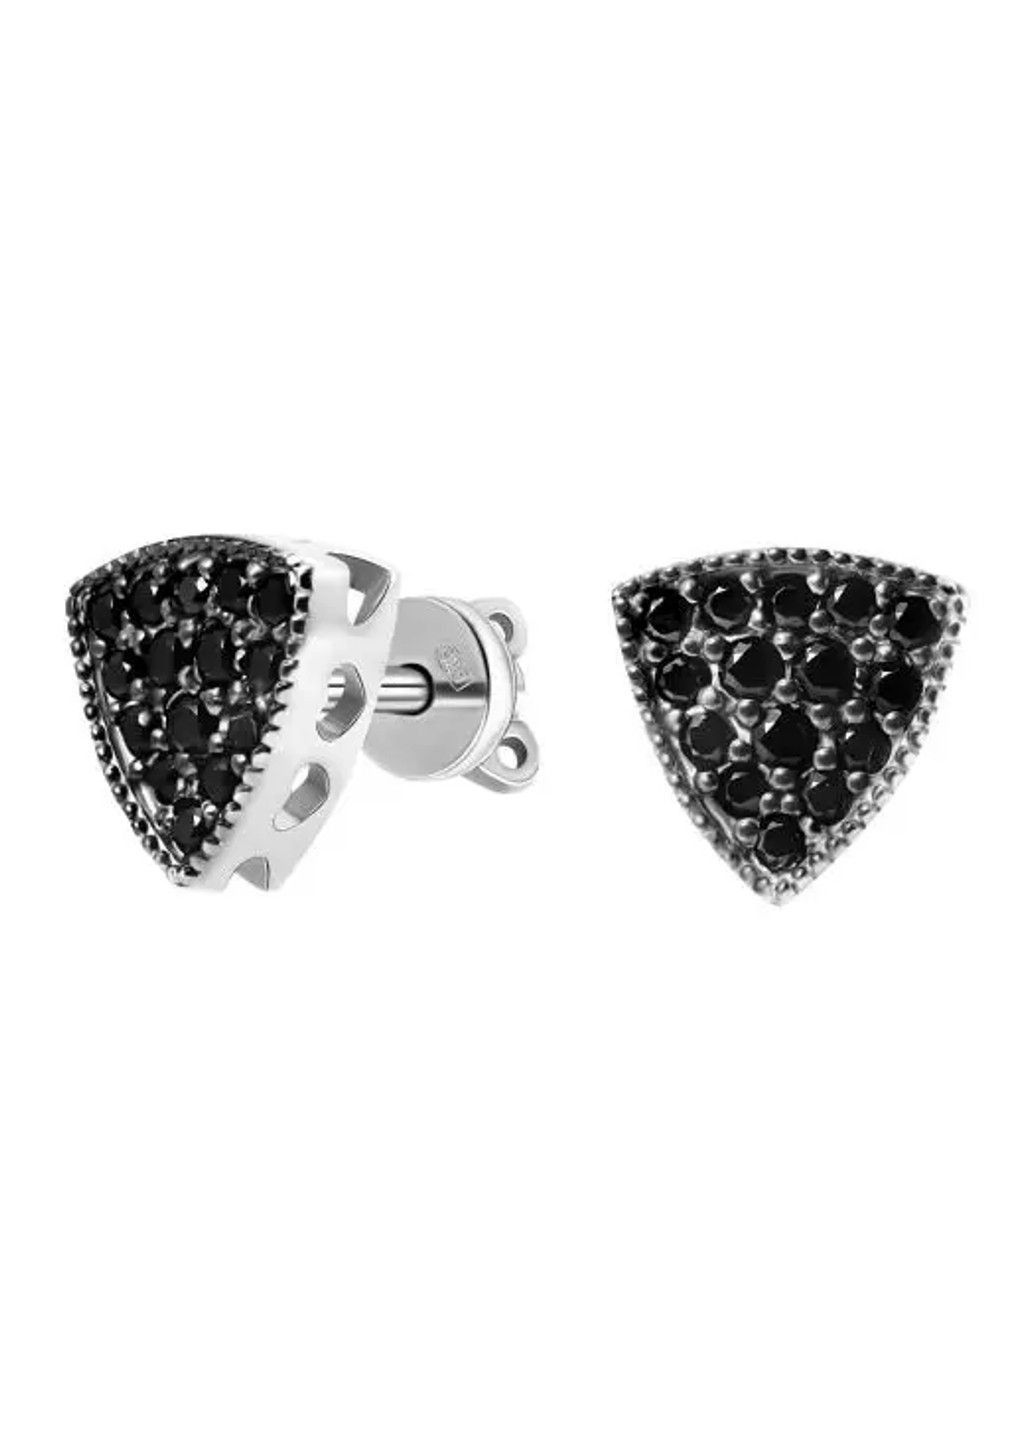 Срібні сережки з чорним камінням Невідомість UMAX (289351629)